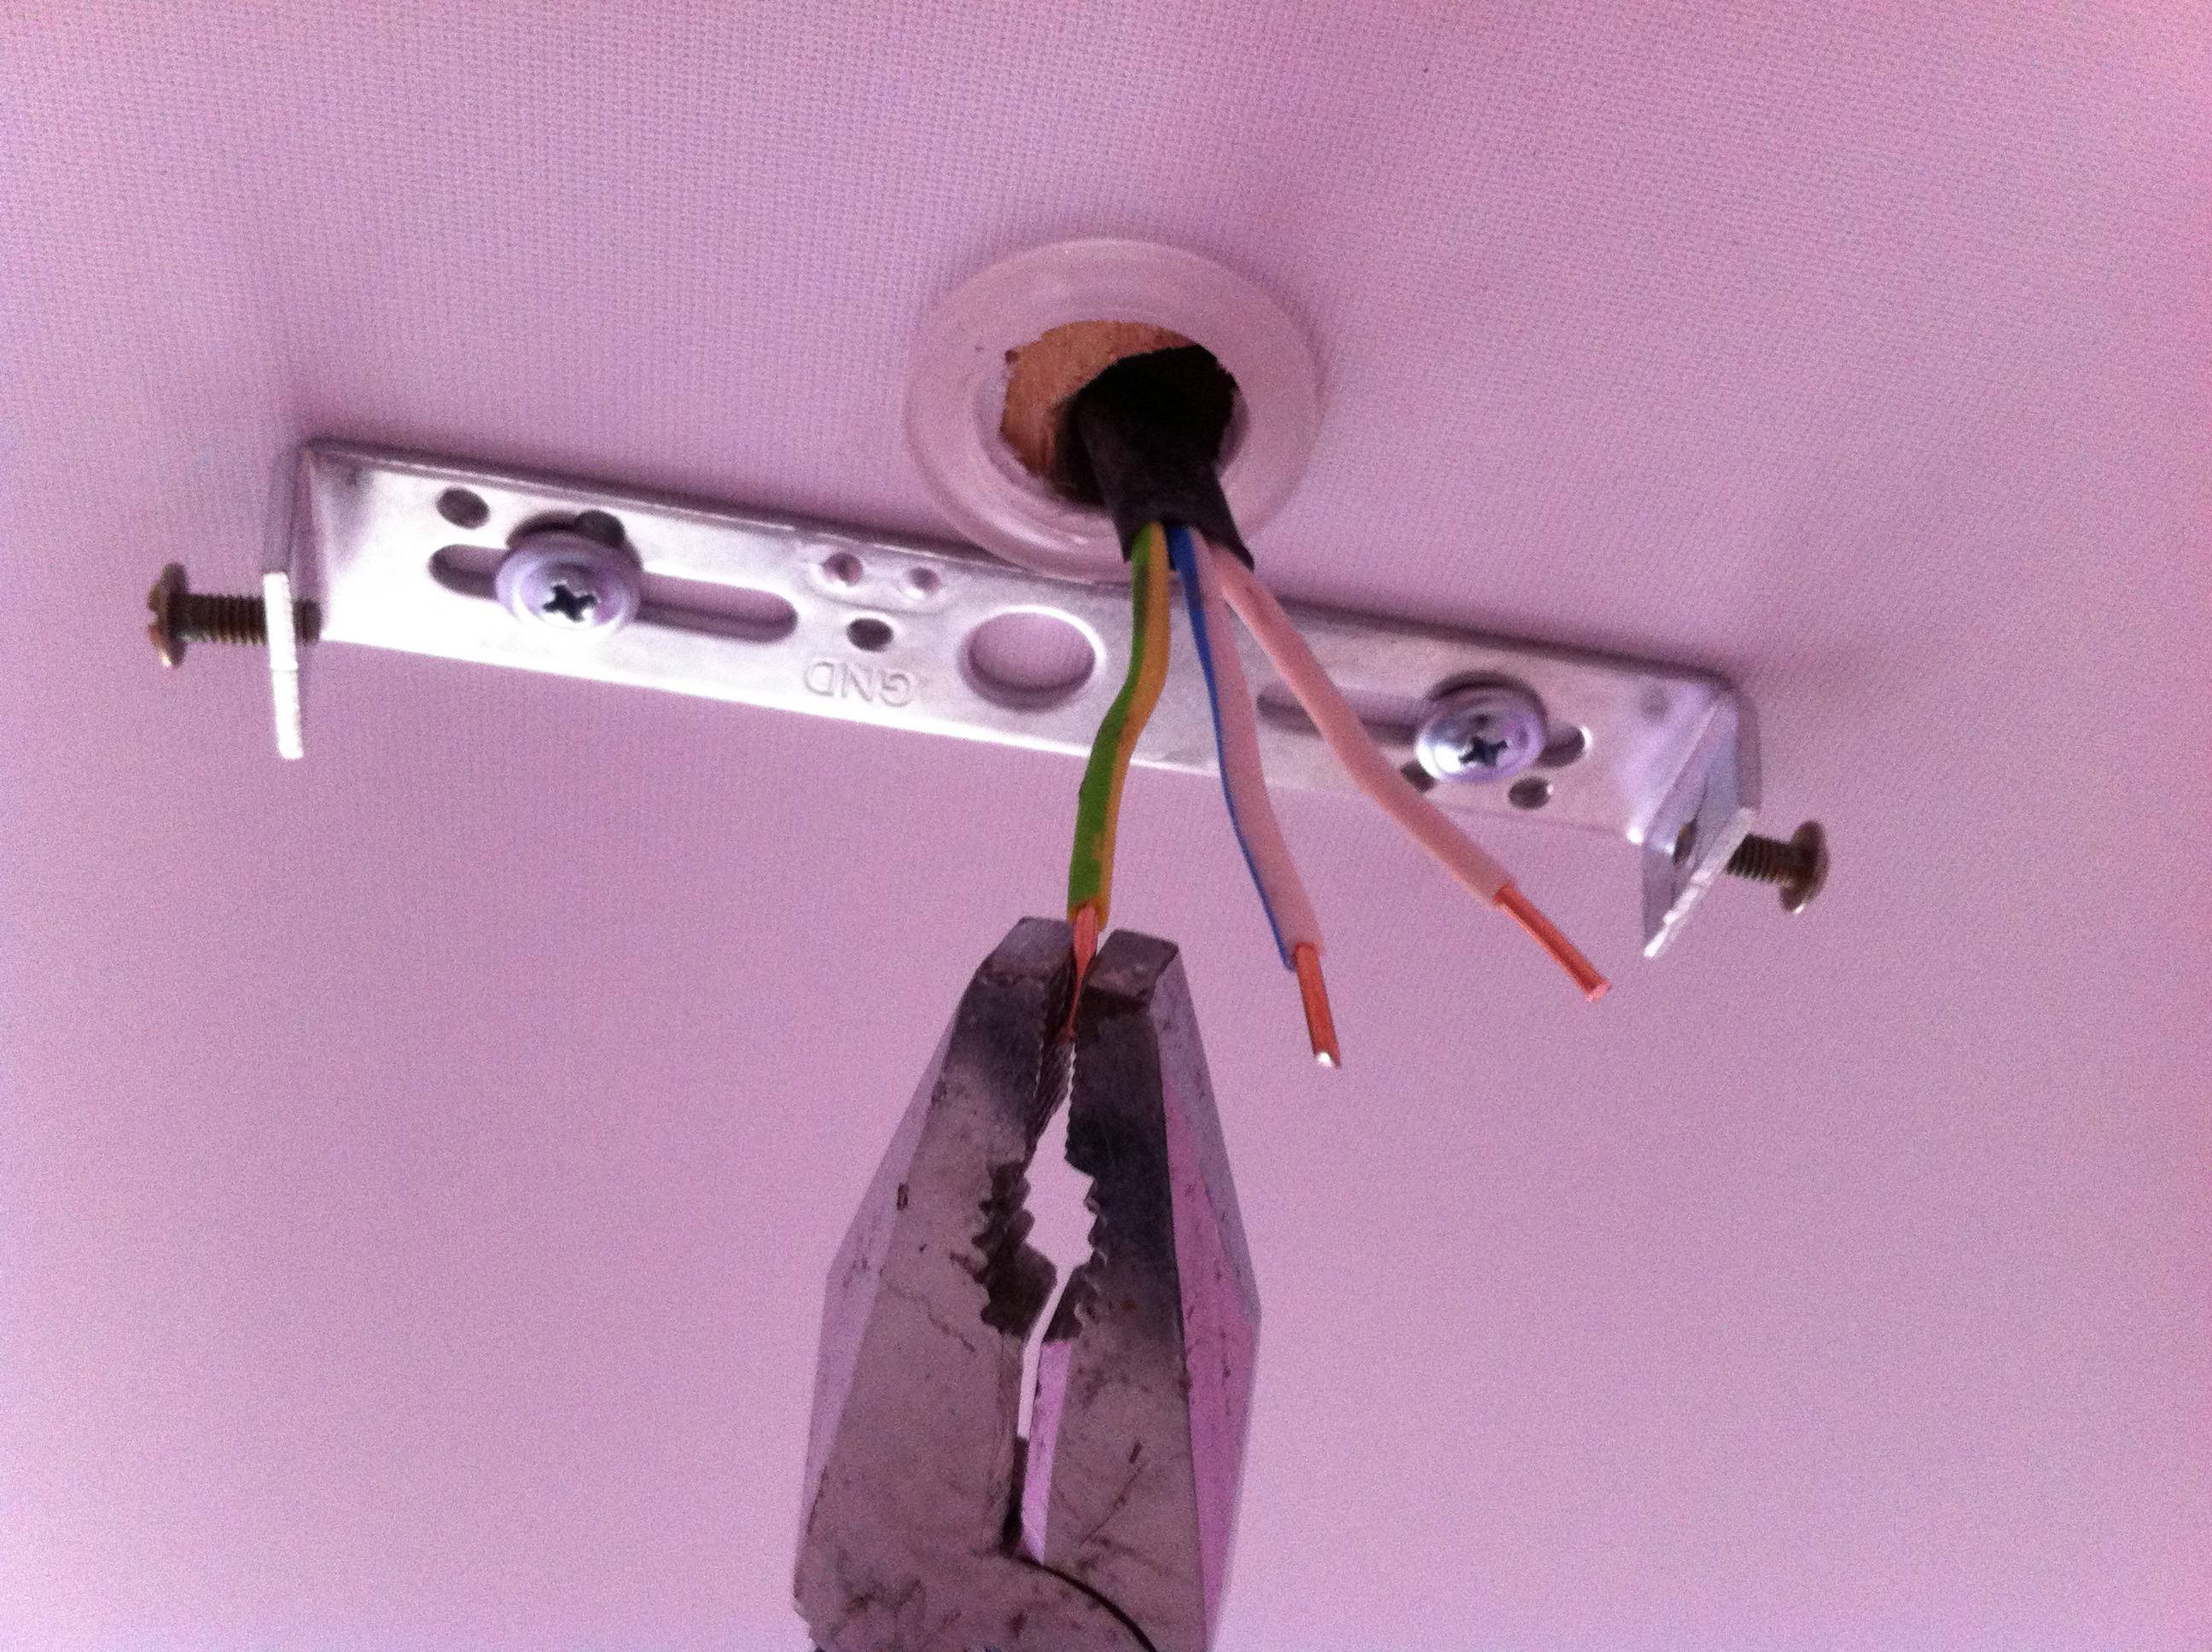 Как повесить люстру на натяжной потолок (варианты крепежа и технология установки)